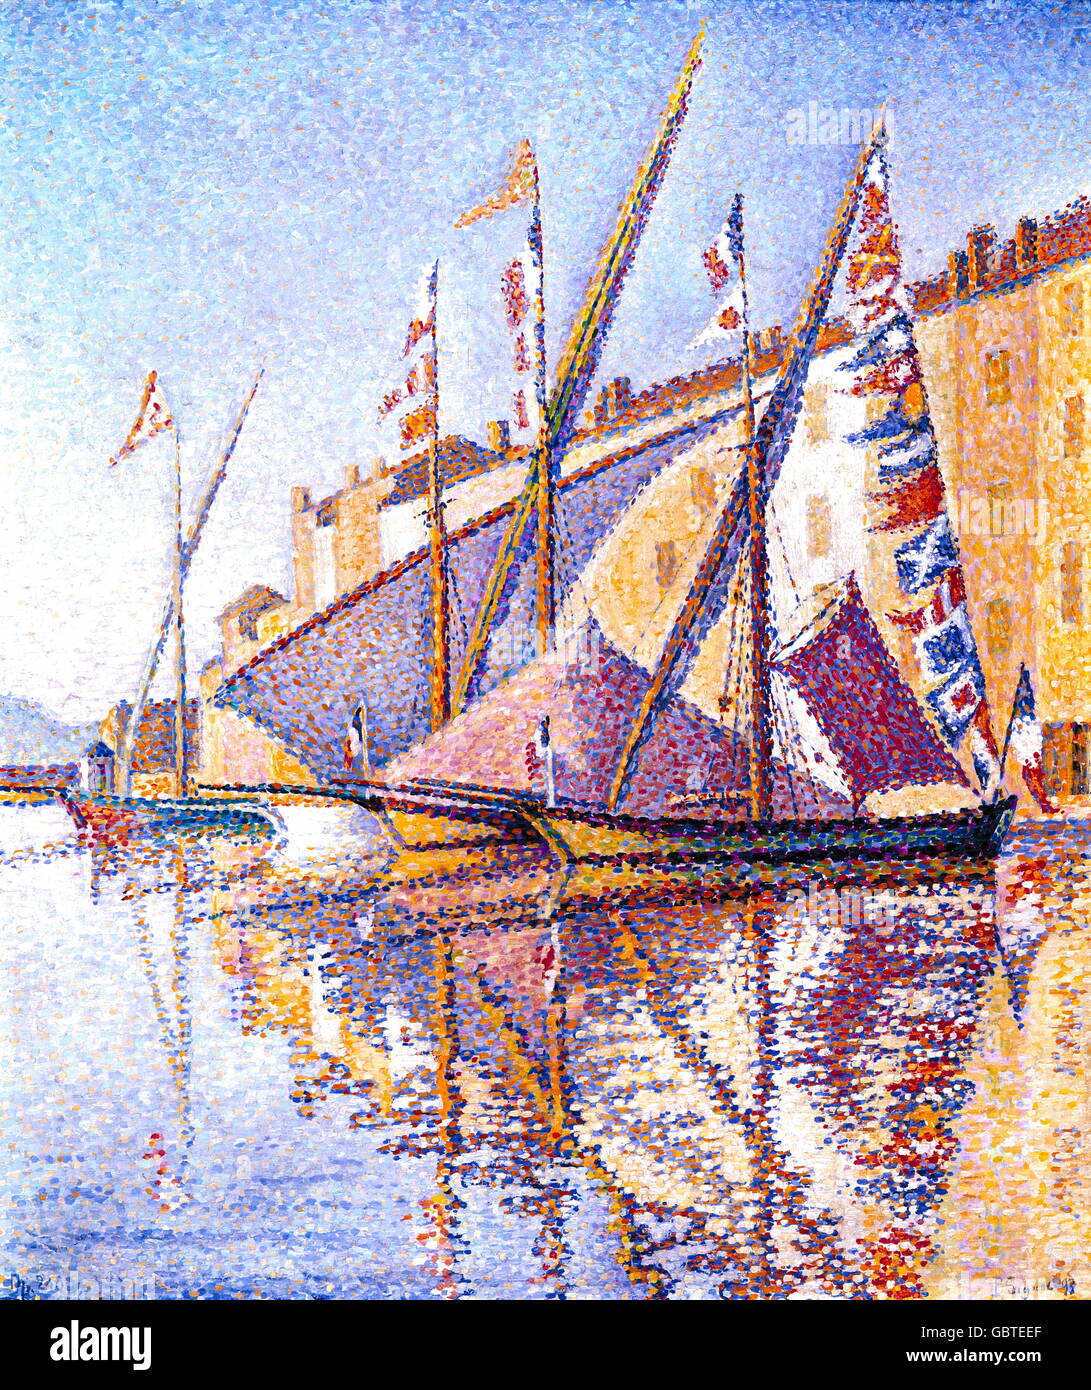 Beaux-arts, Signac, Paul (1863 - 1935), peinture, 'Bateaux en difficulté dans le port de St Tropez", huile sur toile, 46 x 56 cm, 1893, Wuppertal, Von-der-Heydt-Museum, Banque D'Images